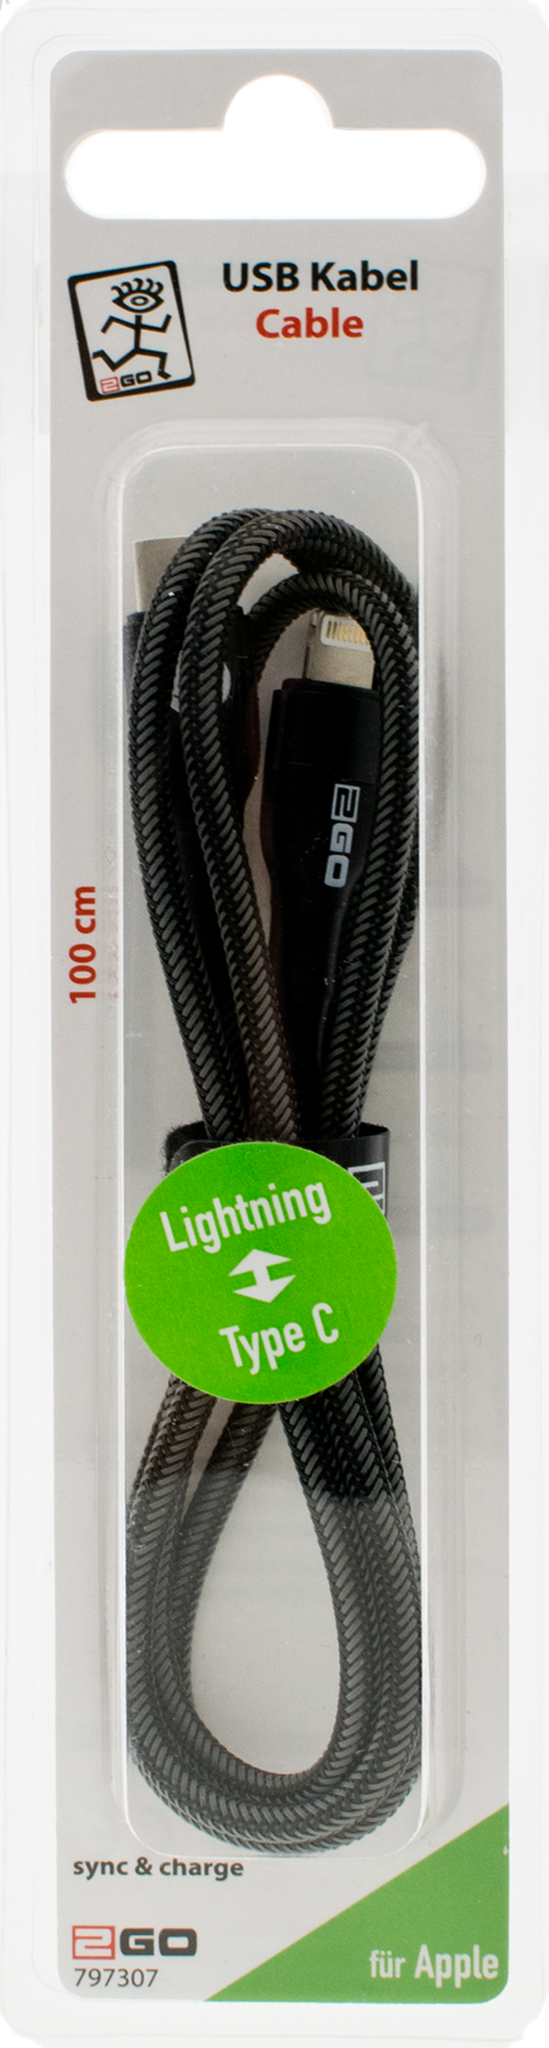 Bild von USB Kabel Type C->Lightning